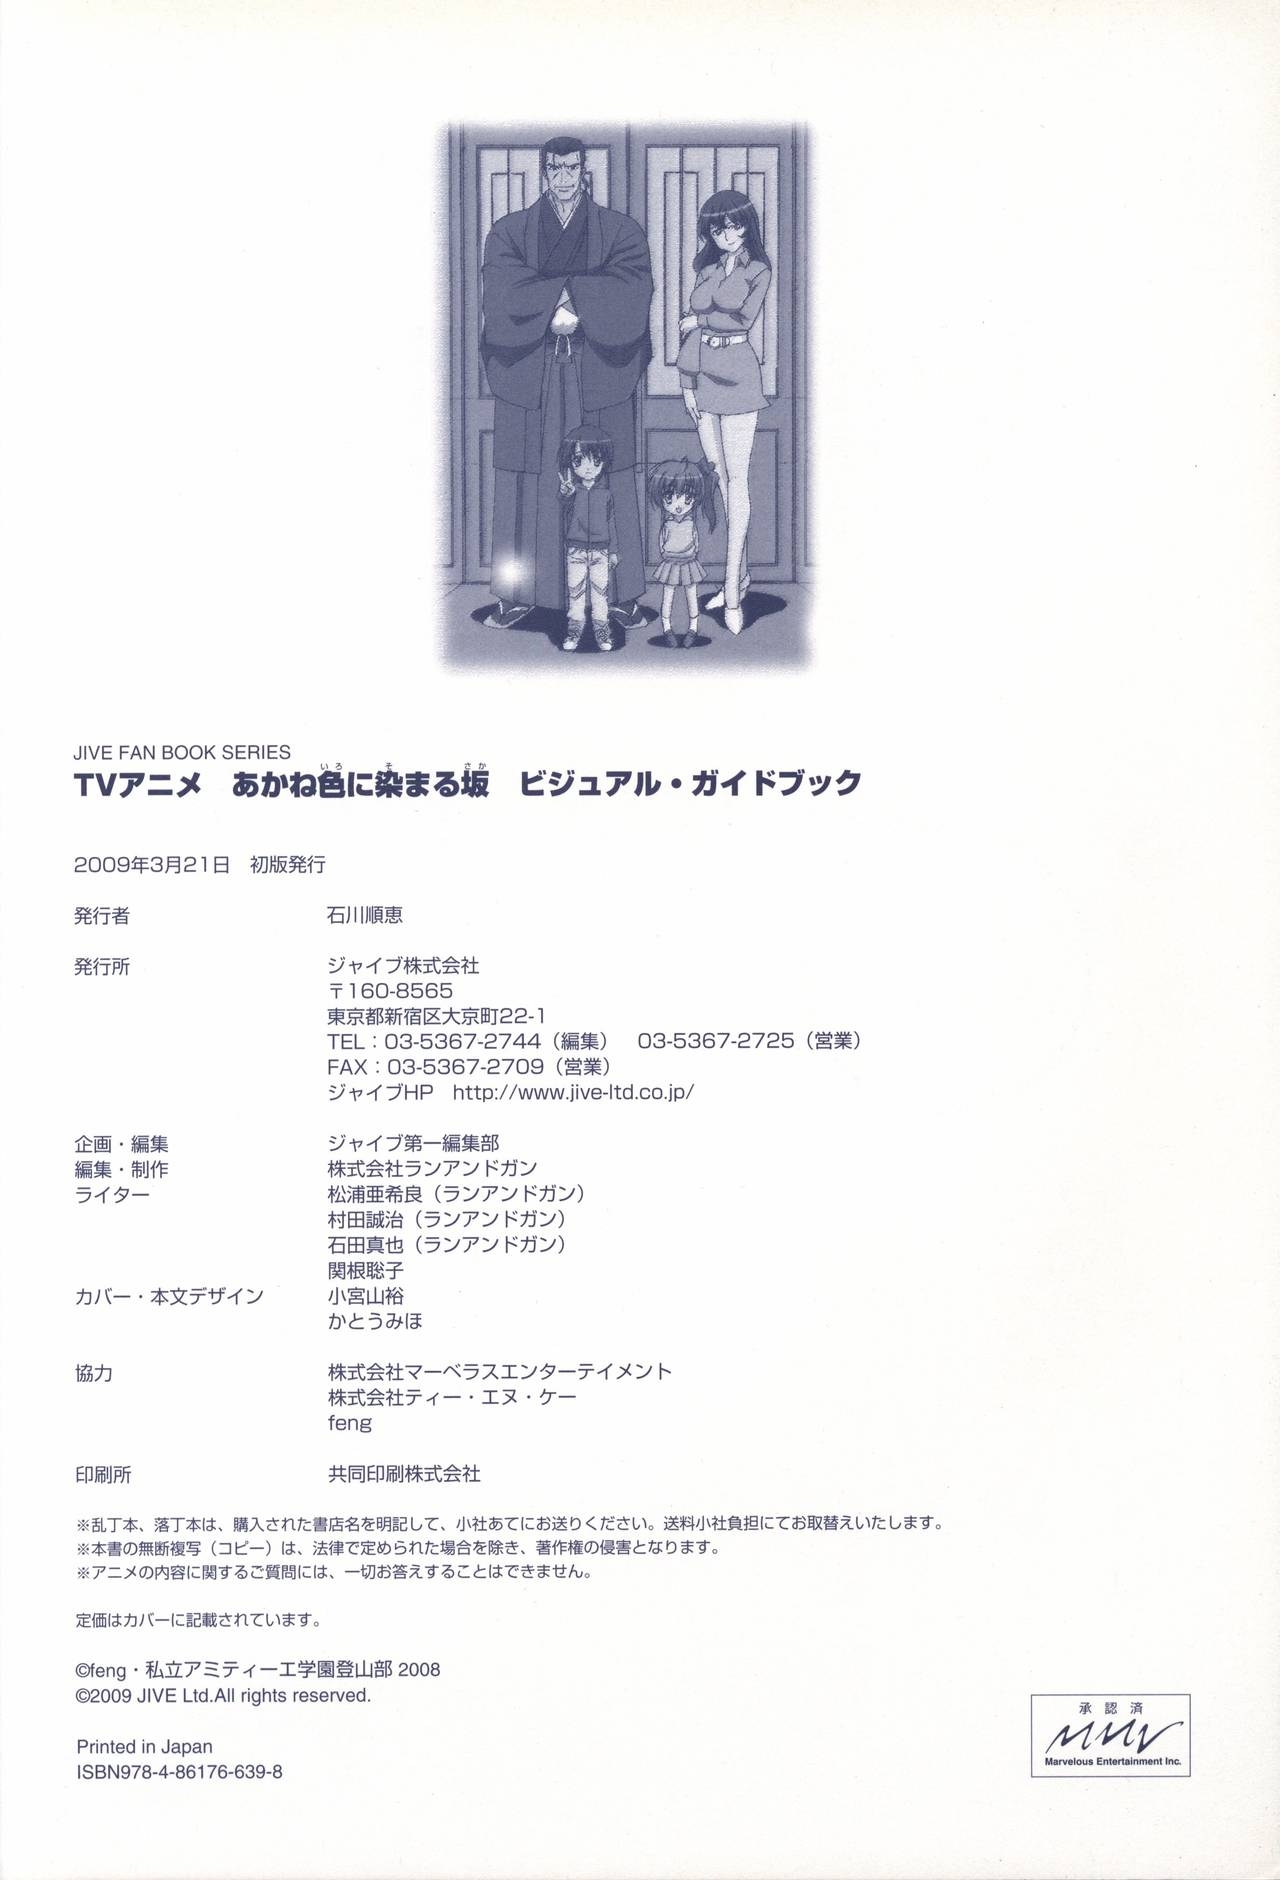 TV ANIME Akaneiro ni Somaru Saka Visual Guide Book 104